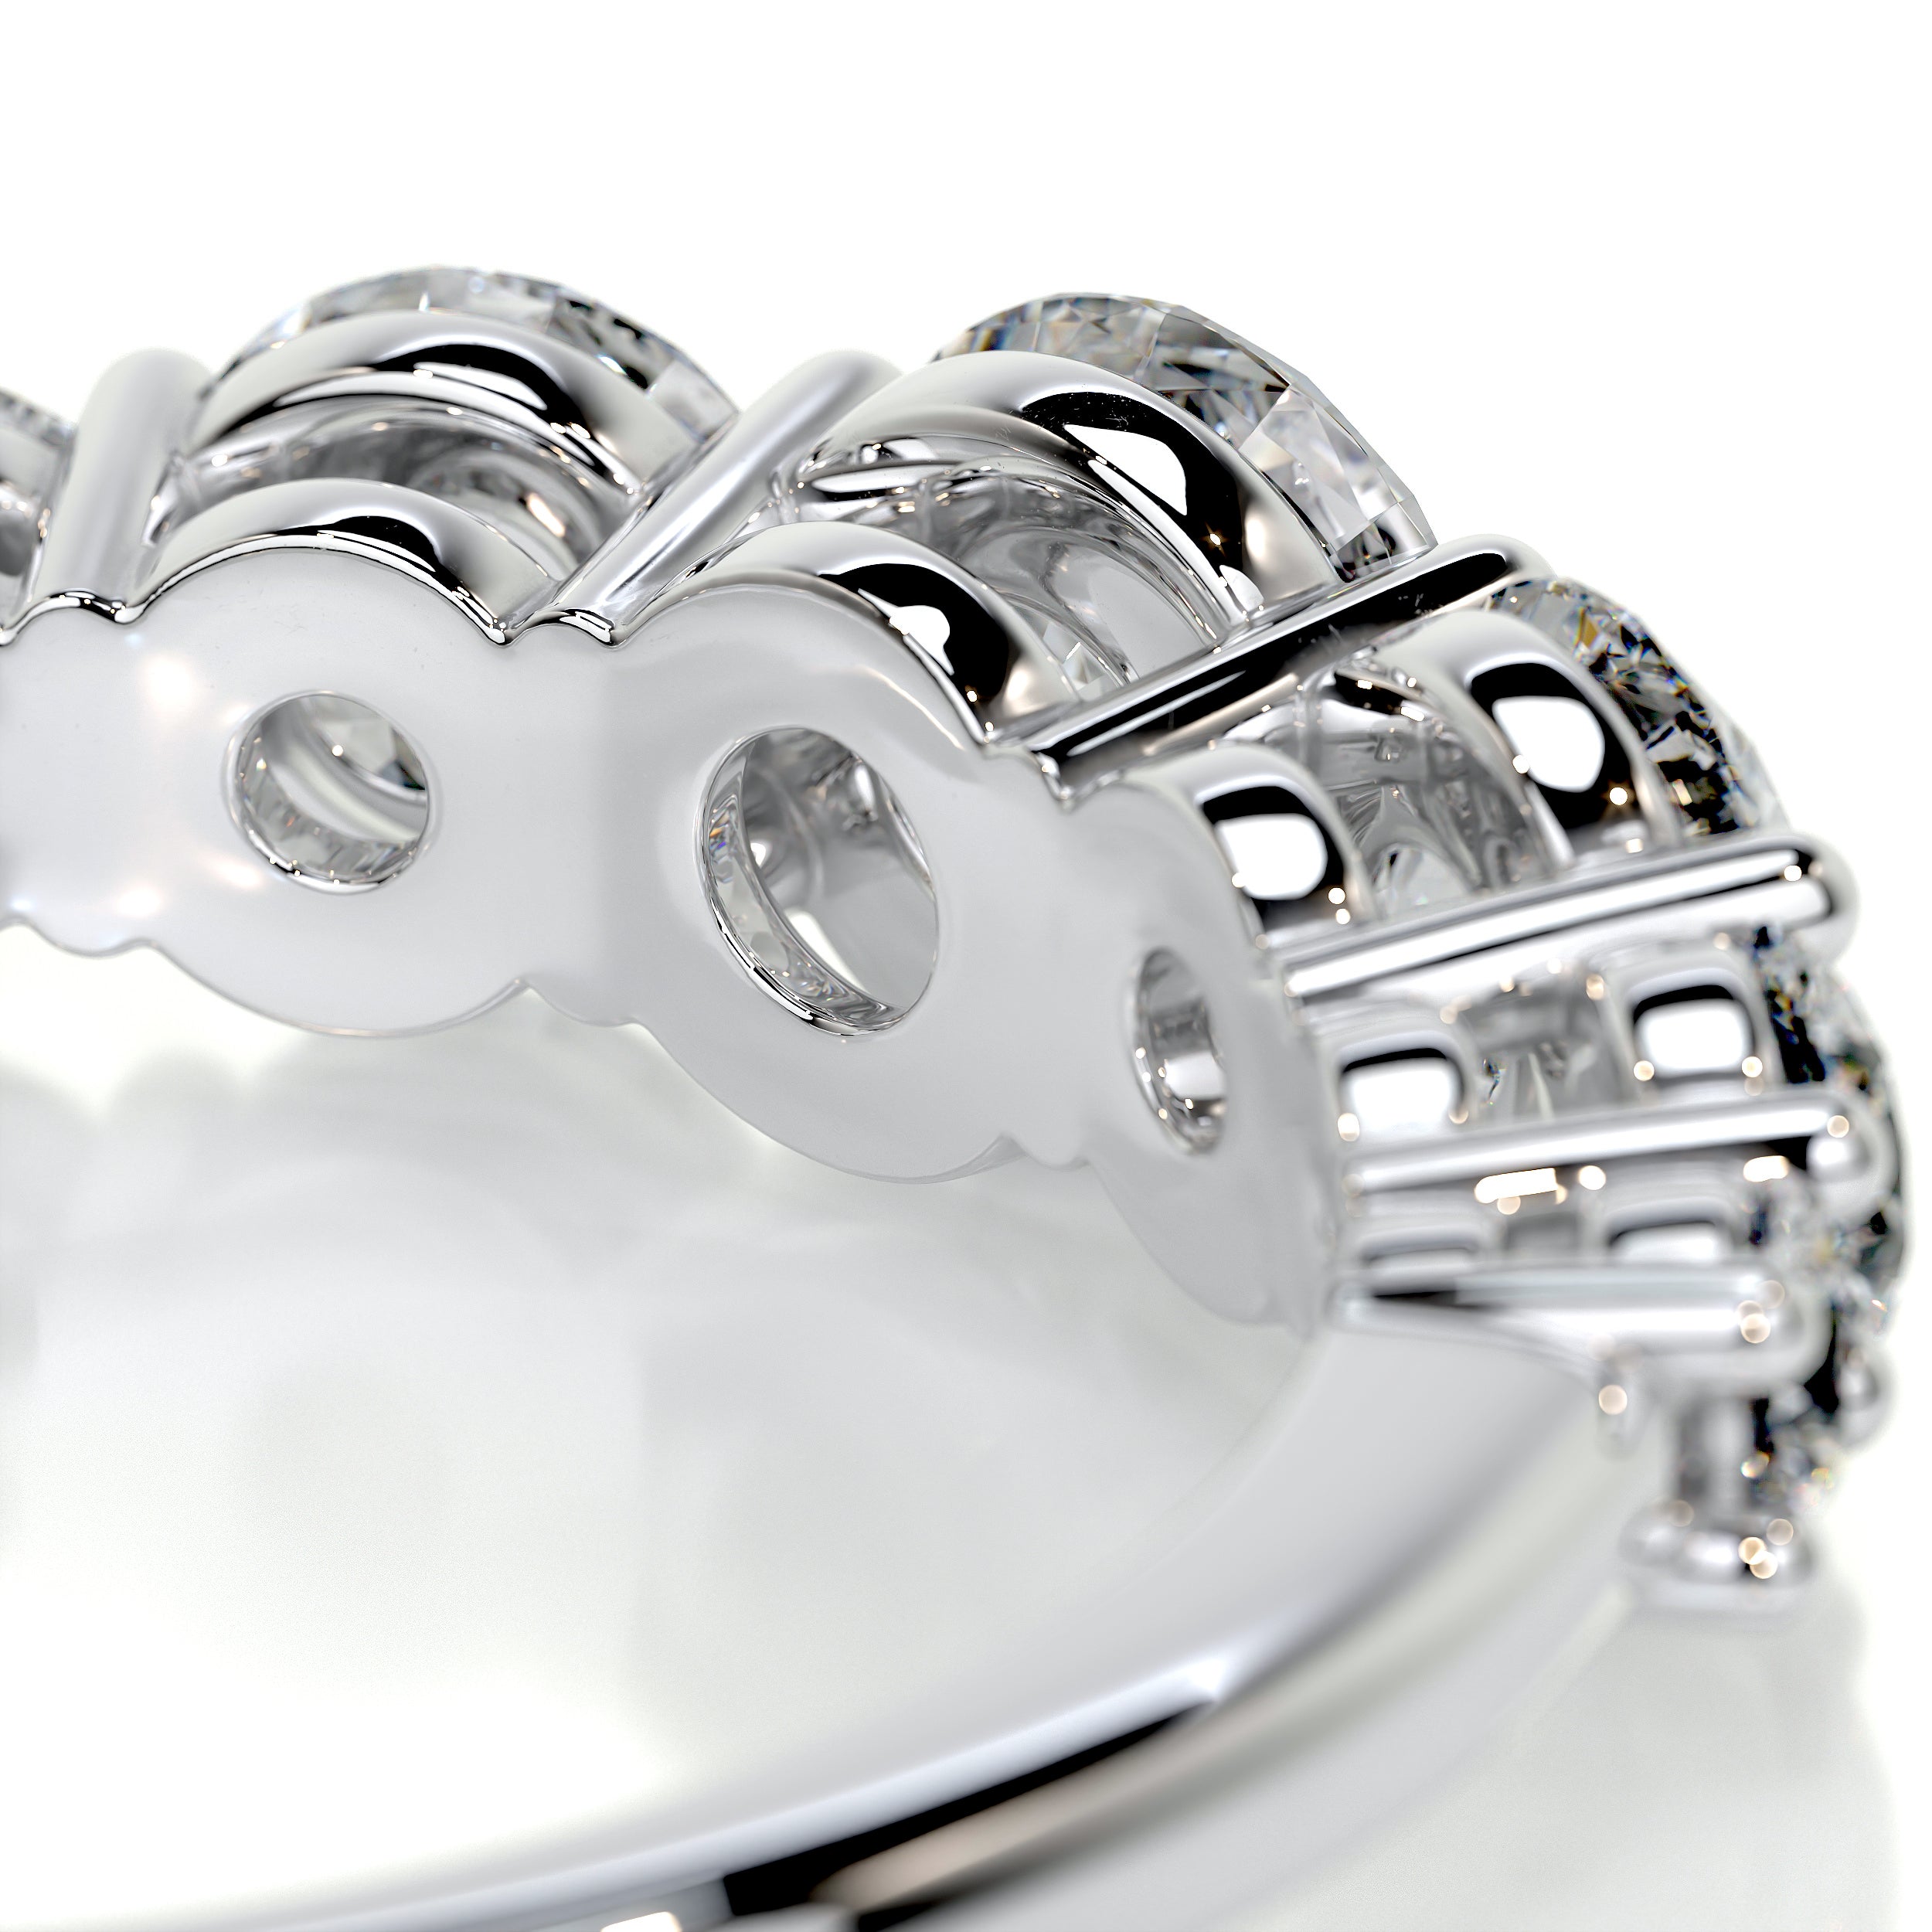 Makenzi Diamond Engagement Ring -14K White Gold